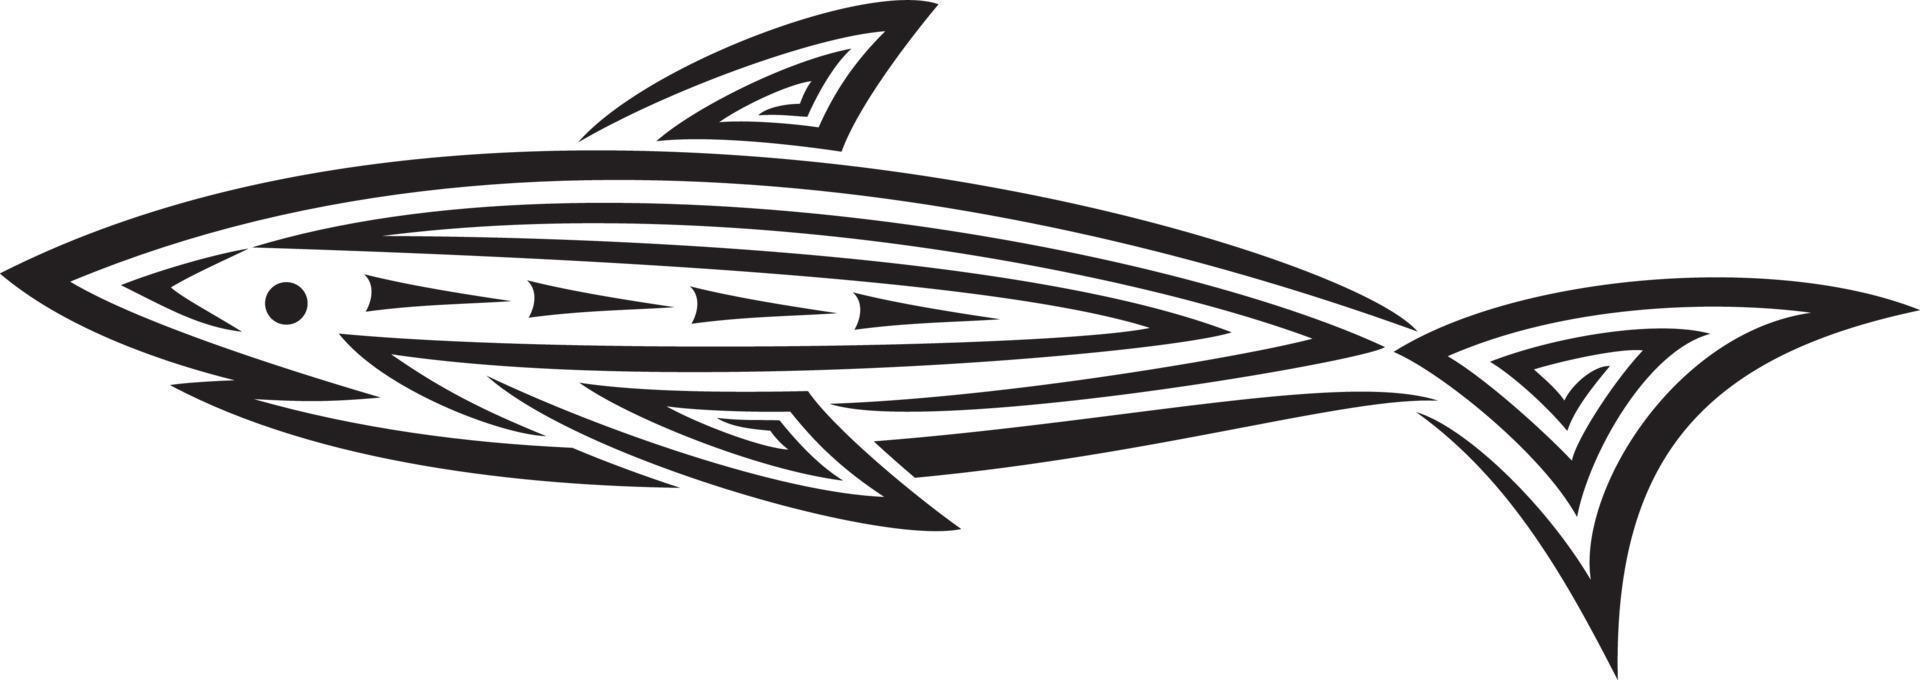 haai in tribal tattoo-stijl vector